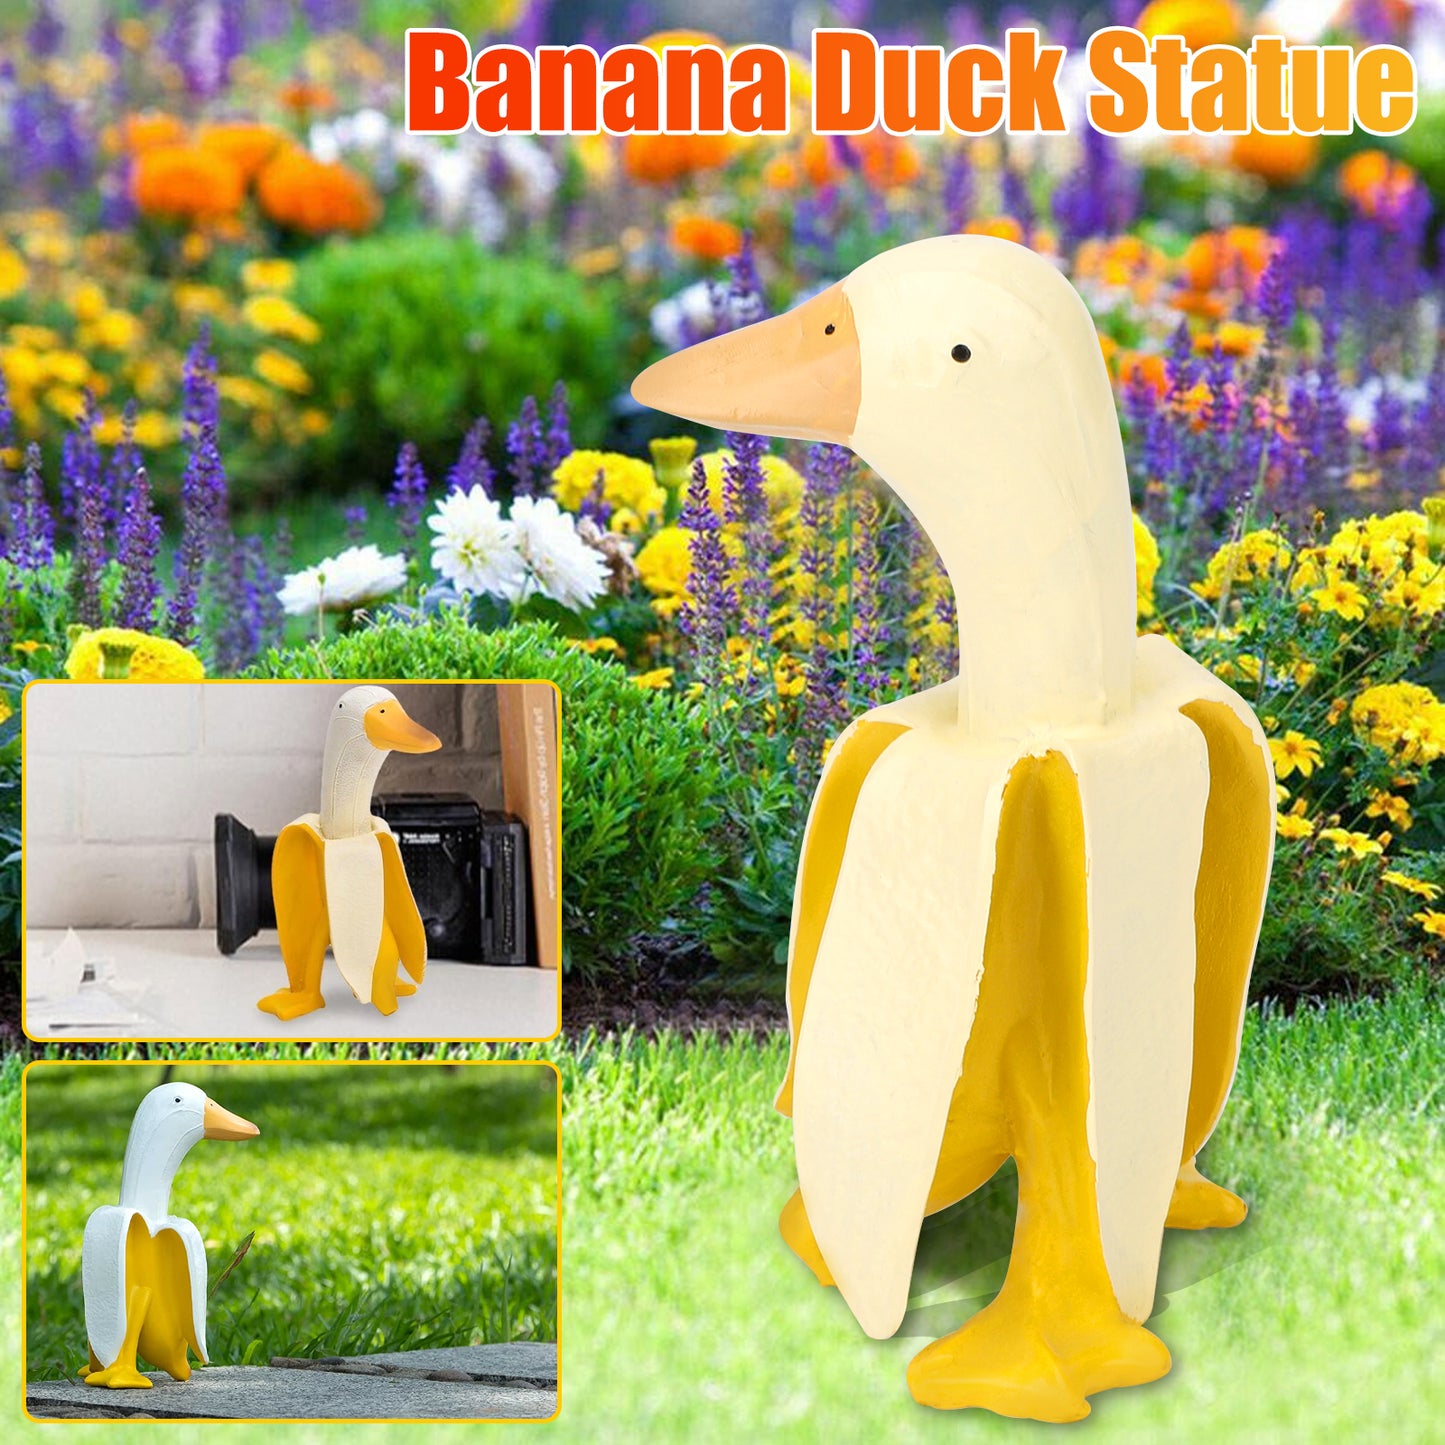 Banana duck sculptures